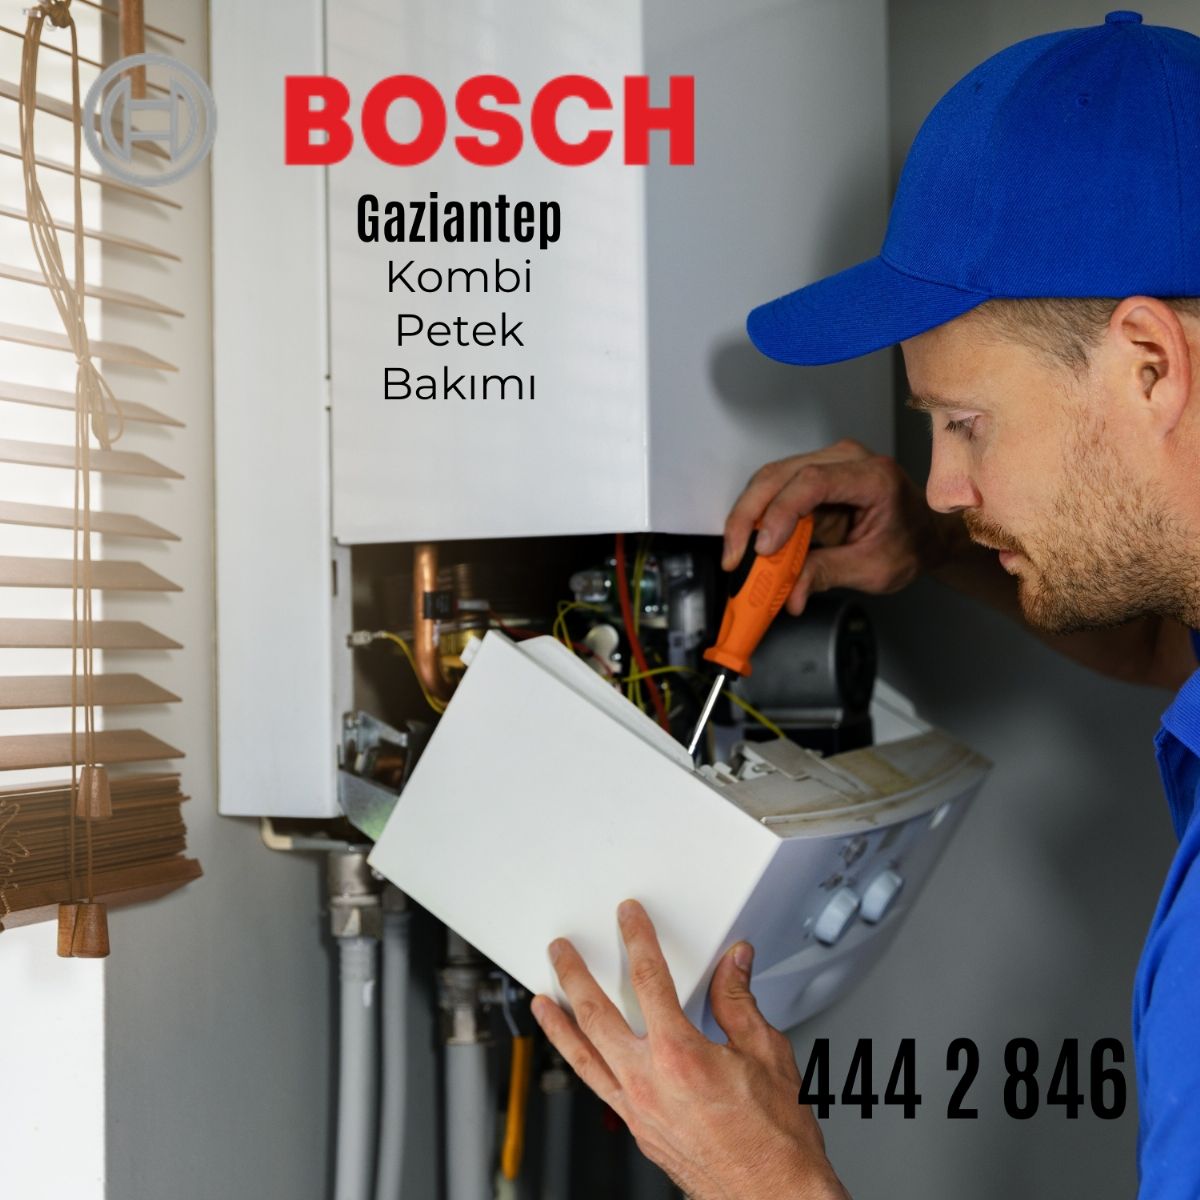 Gaziantep Bosch Kombi Ve Petek Bakımı-444 2 846